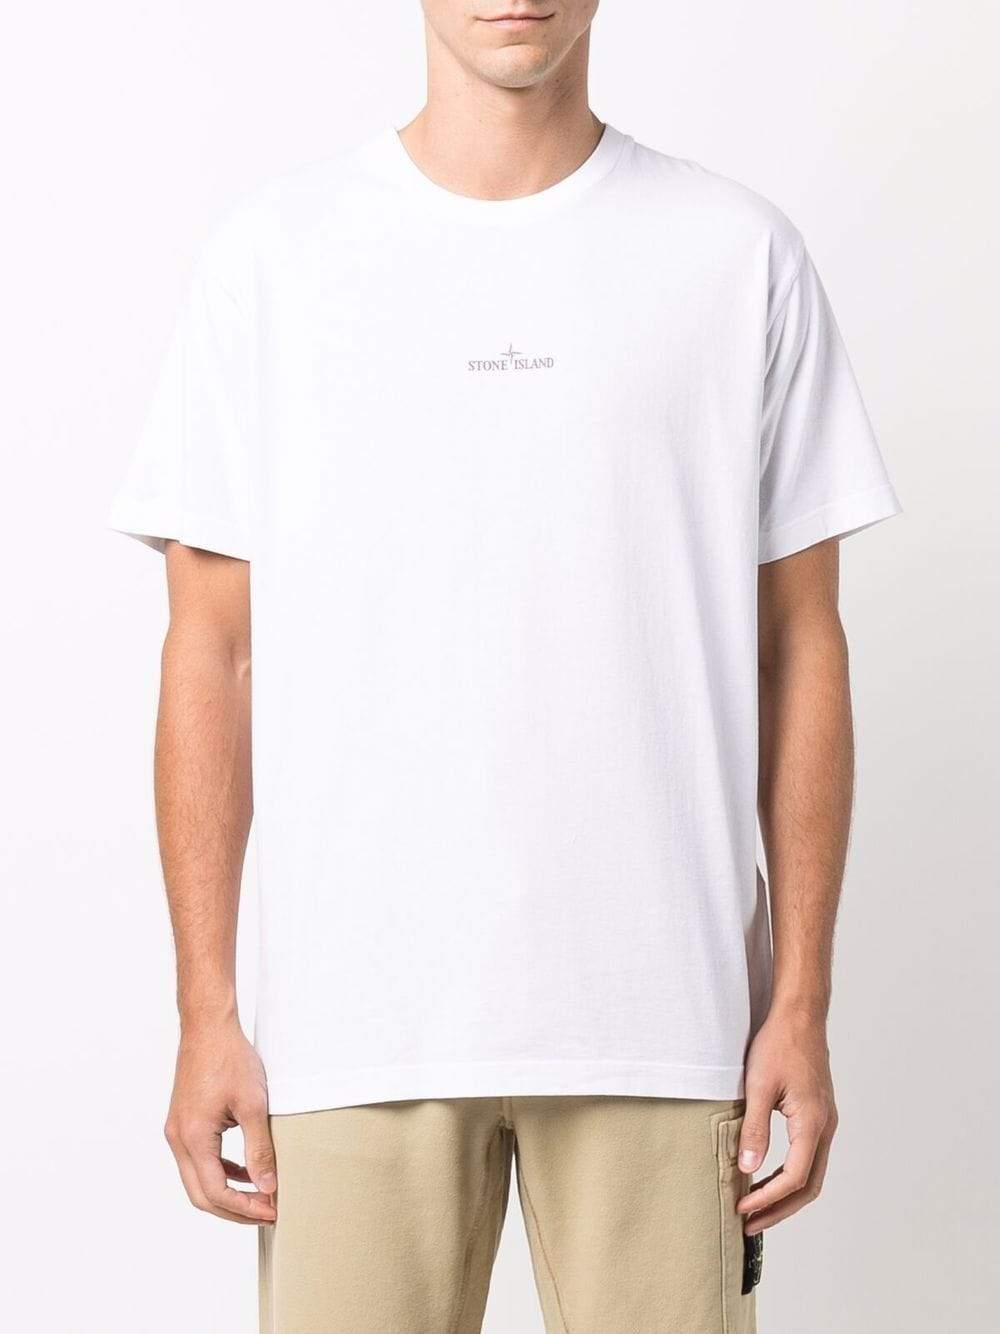 STONE ISLAND Logo Print T-Shirt White - MAISONDEFASHION.COM